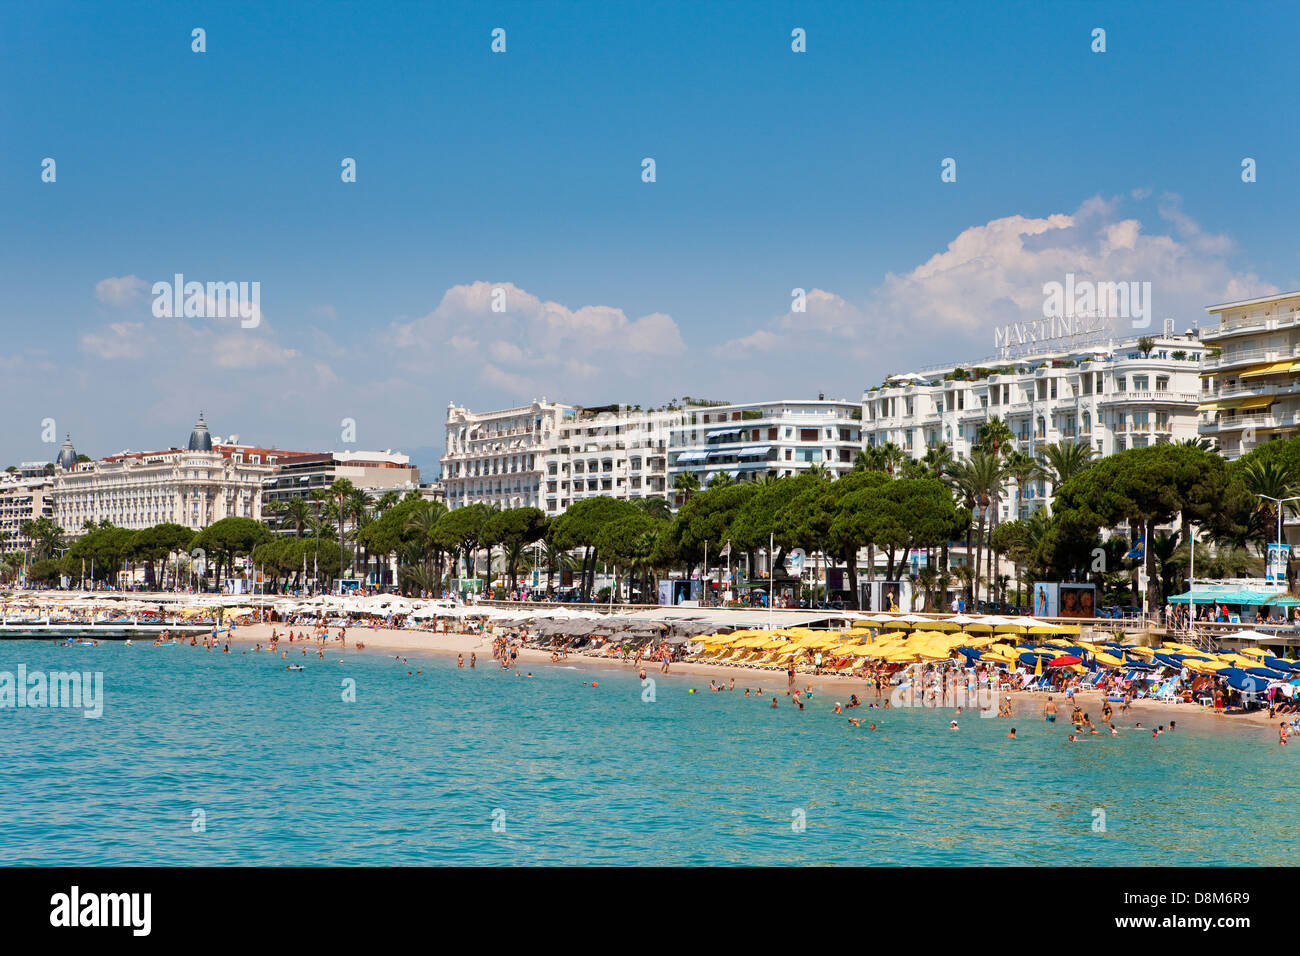 Il famoso hotel Martinez, Boulevard de la Croisette lungo il lungomare, Cannes, Francia Foto Stock